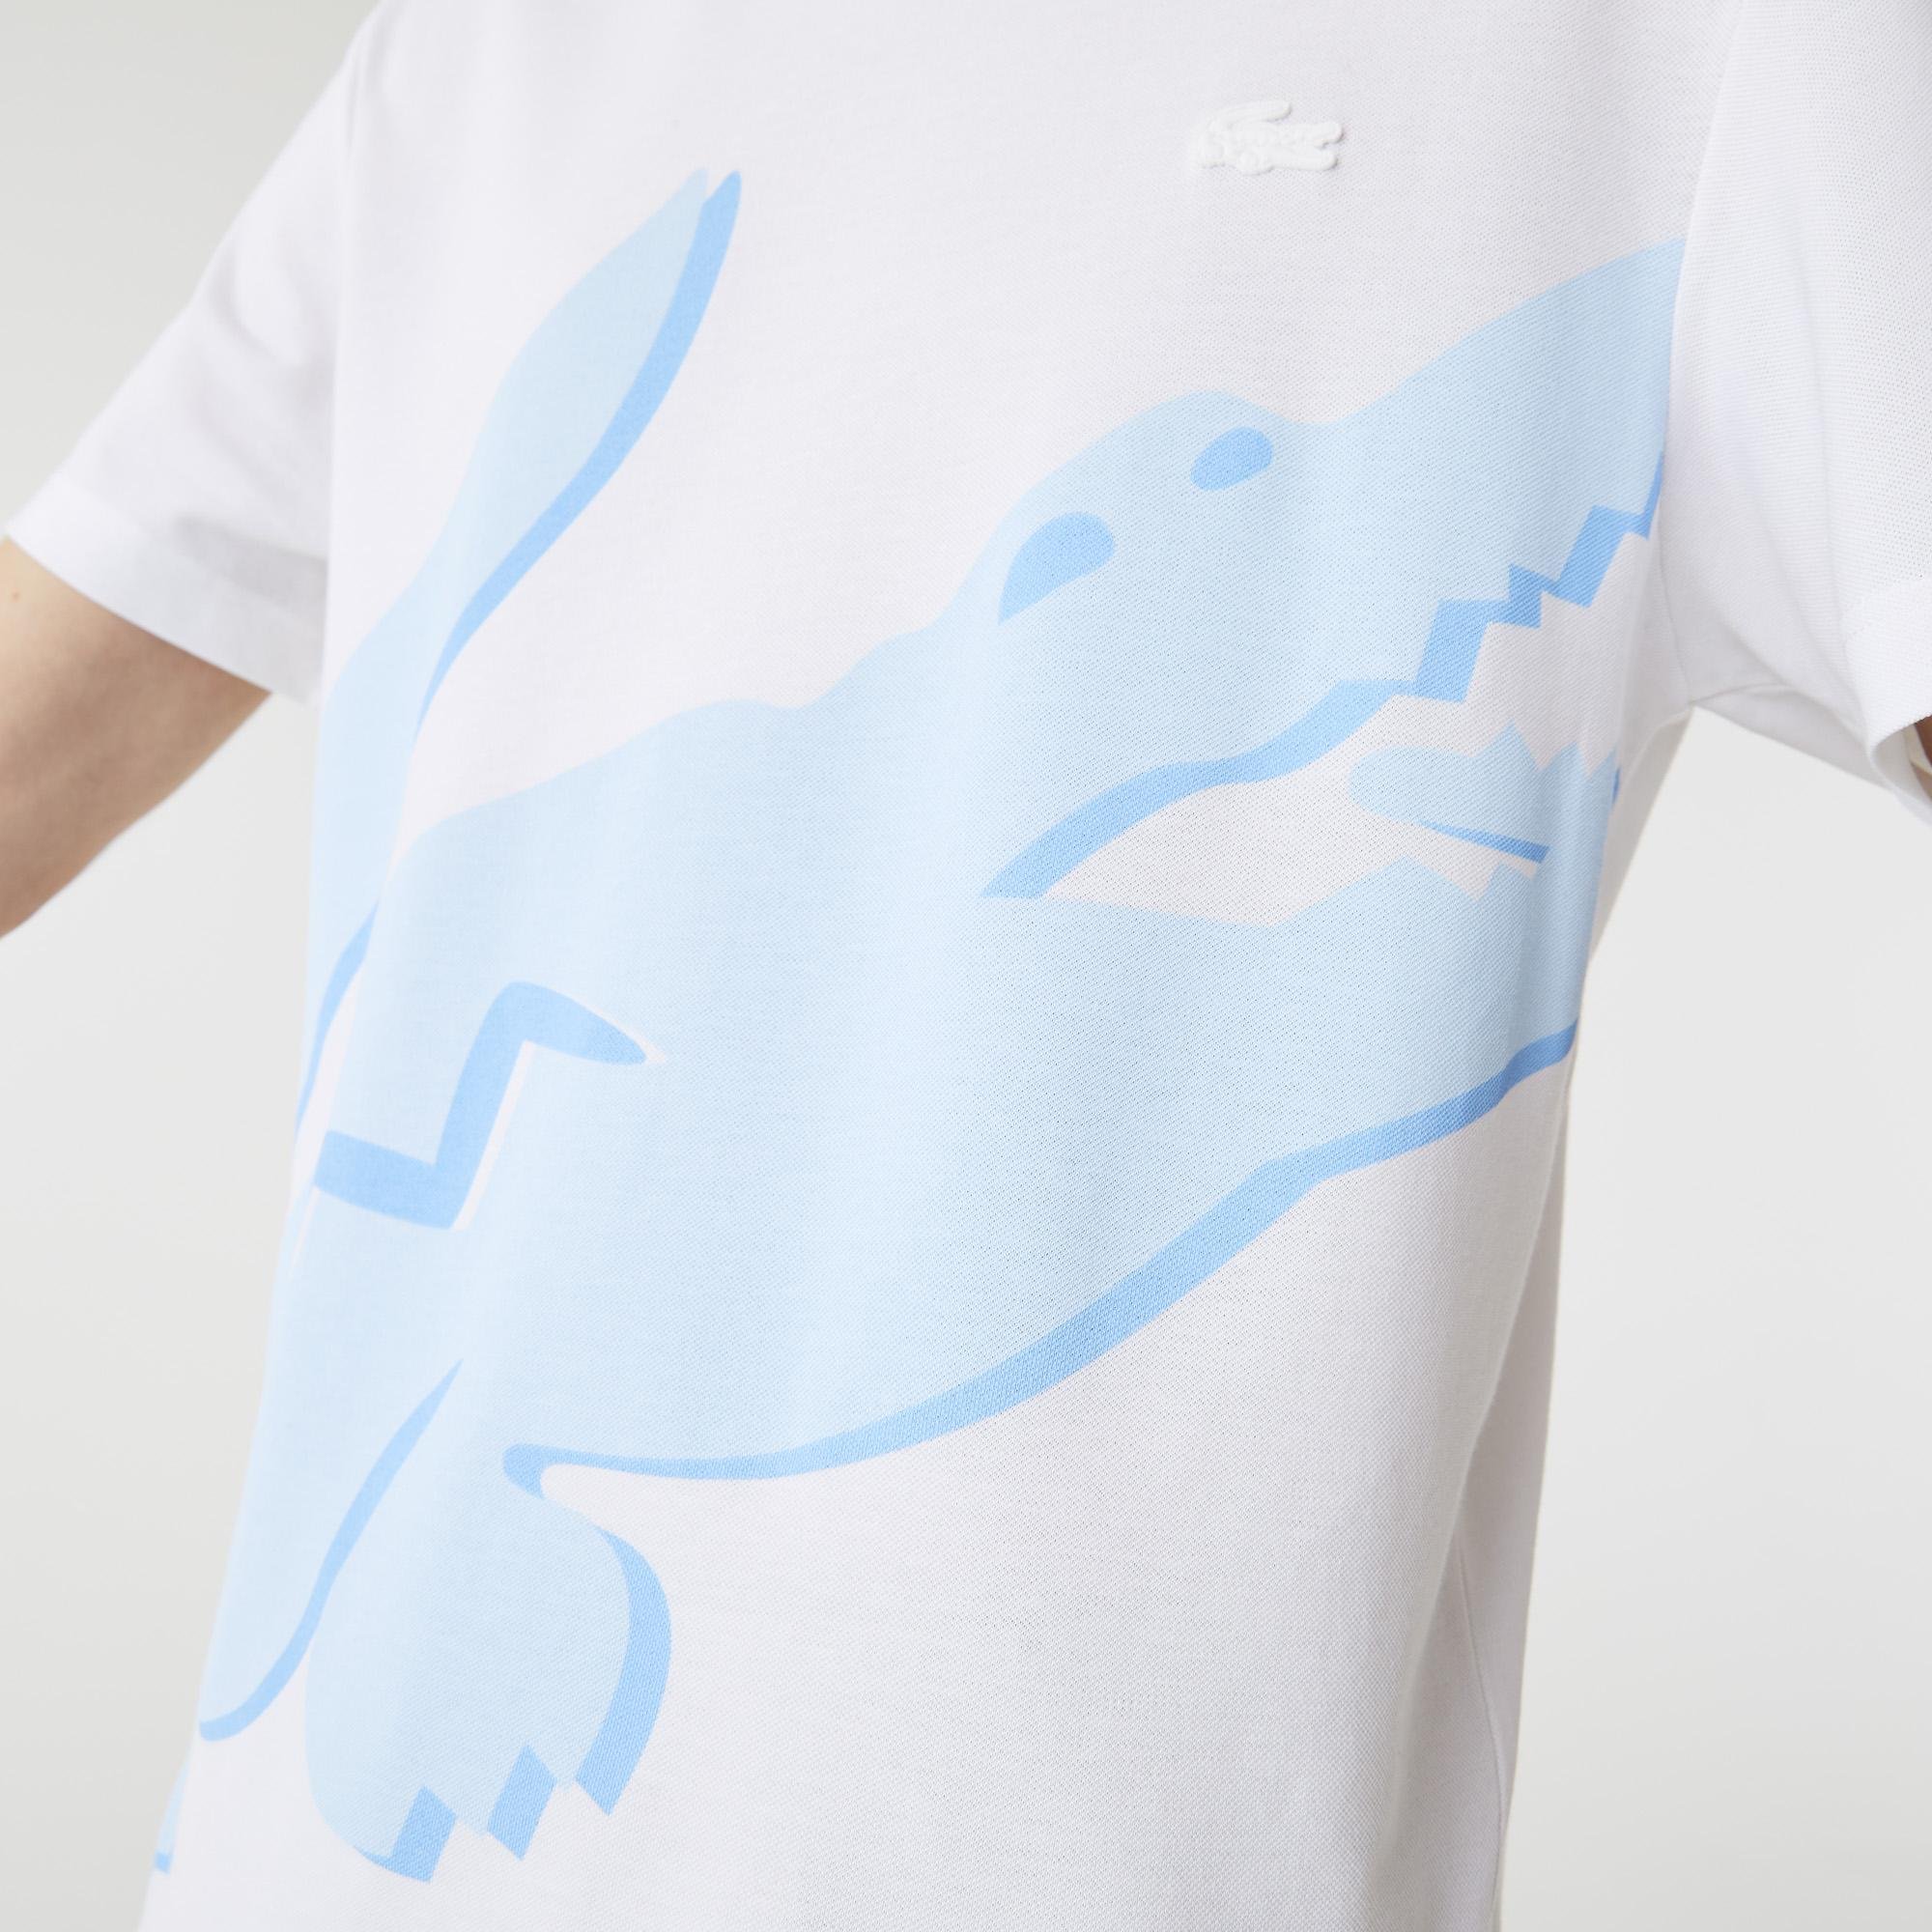 Lacoste Pánské tričko z organické bavlny s potiskem krokodýla a výstřihem ke krku